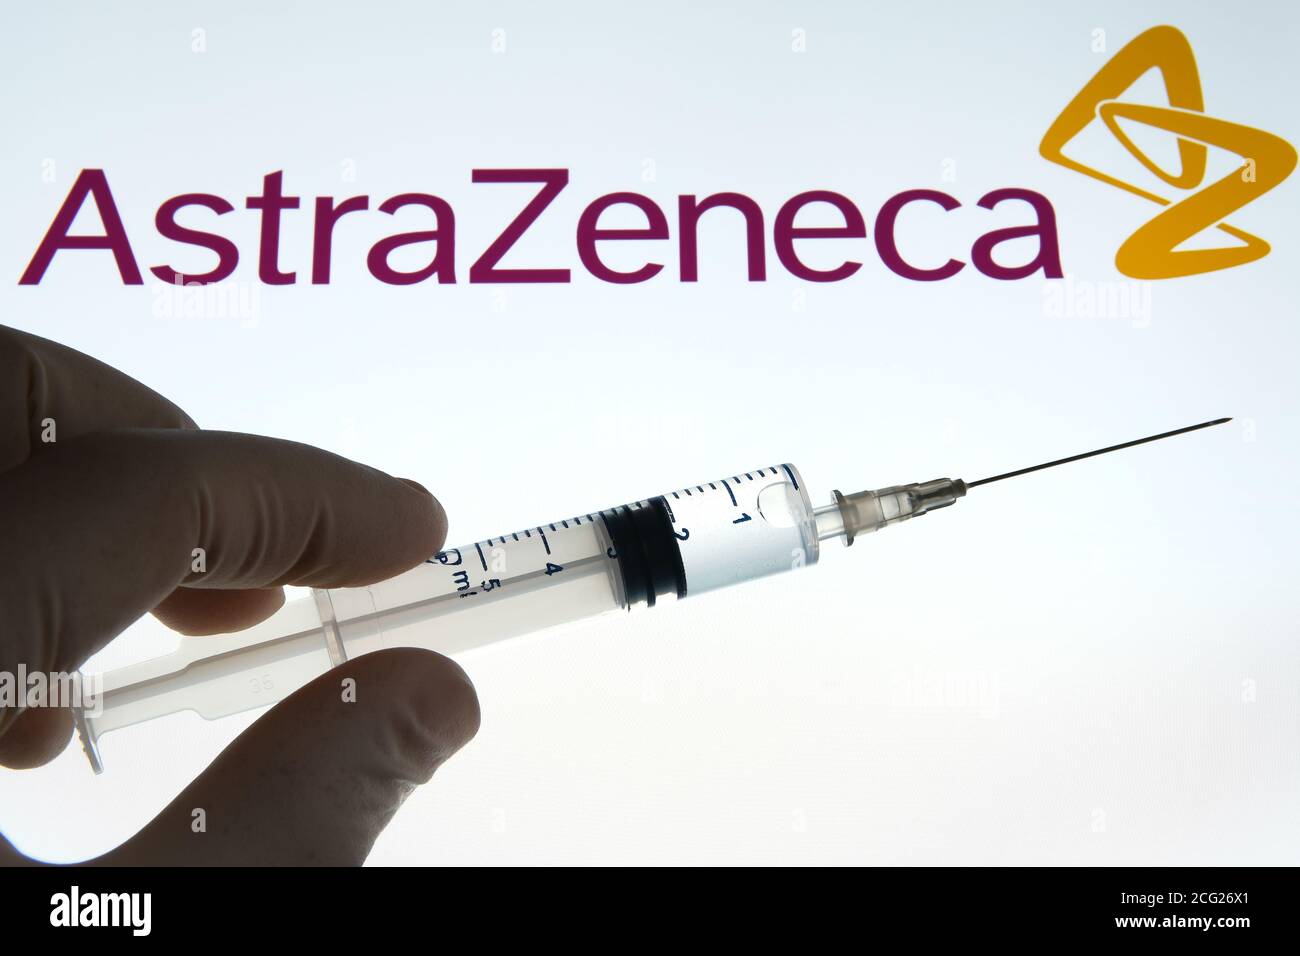 Impfstoffkonzept von AstraZeneca Oxford. Spritze auf einem weißen Bildschirm und AstraZeneca Logo auf dem unscharfen Hintergrund. Stockfoto